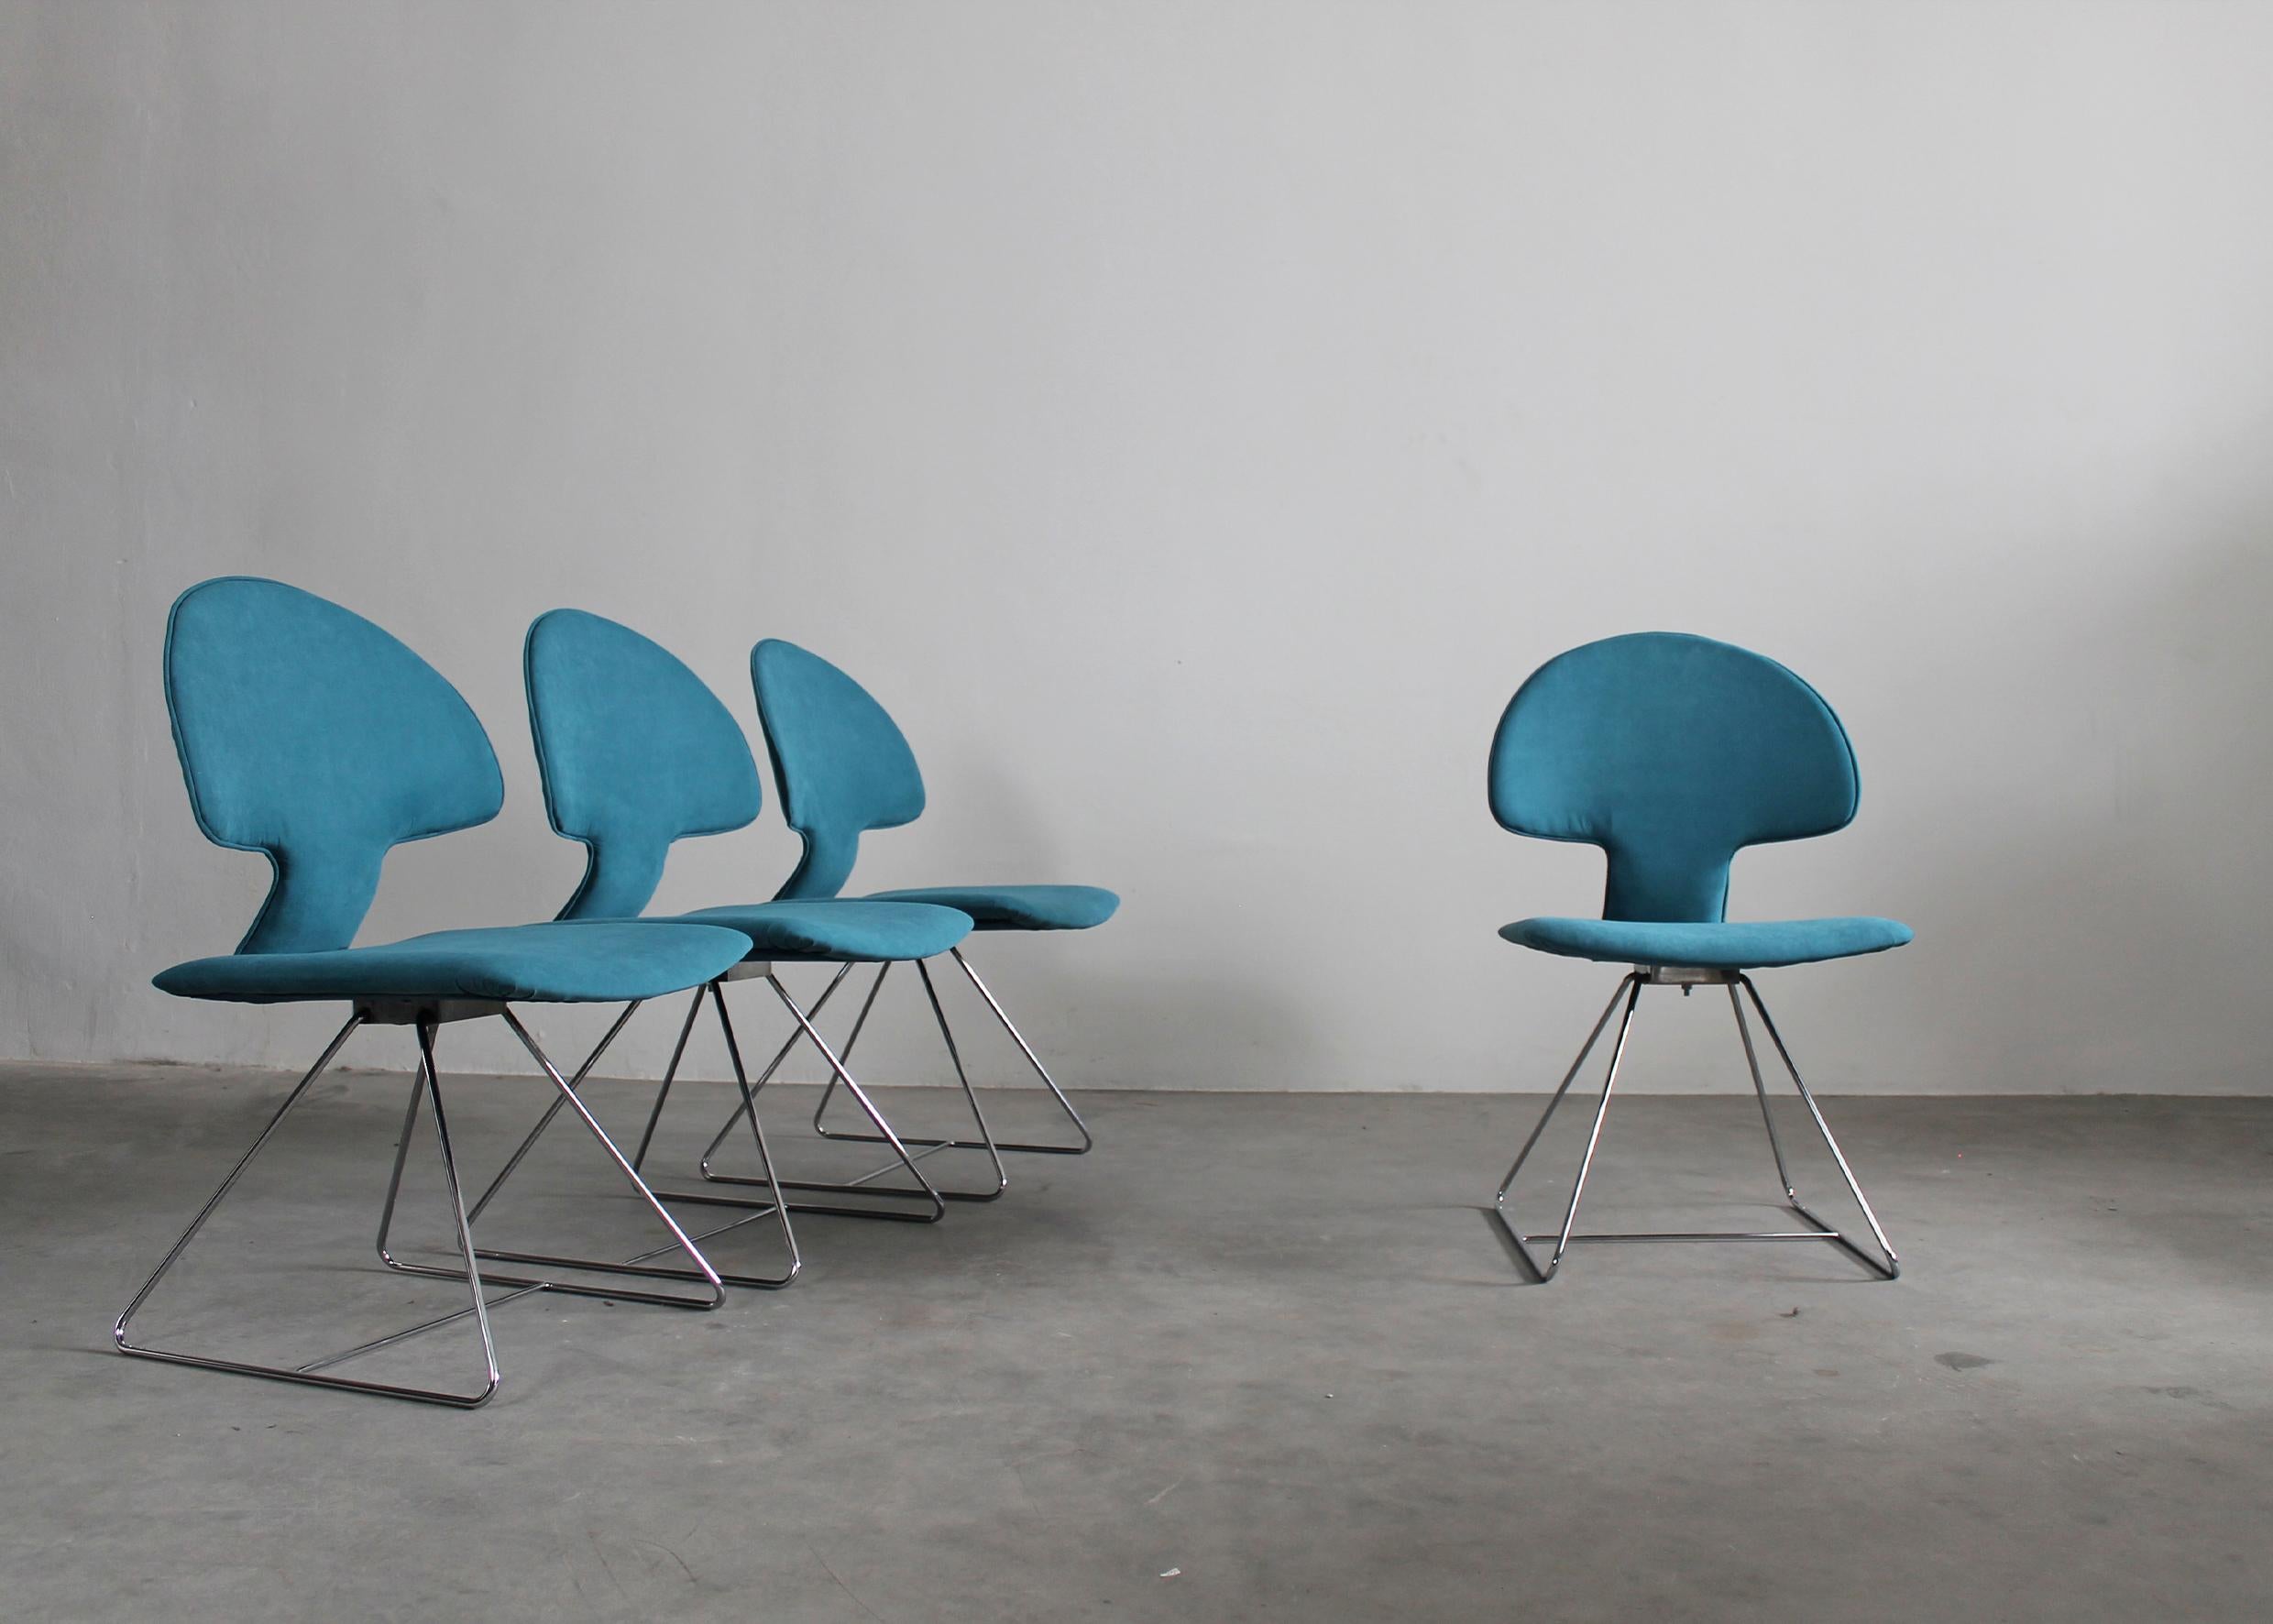 Set aus vier Longobarda-Stühlen mit verchromten Metallbeinen, Sitz und Rückenlehne mit blauem Stoff gepolstert.
Der Longobarda-Stuhl wurde von Vittorio Introini entworfen und von Saporiti in den 1960er Jahren hergestellt. 

Vittorio Introini ist